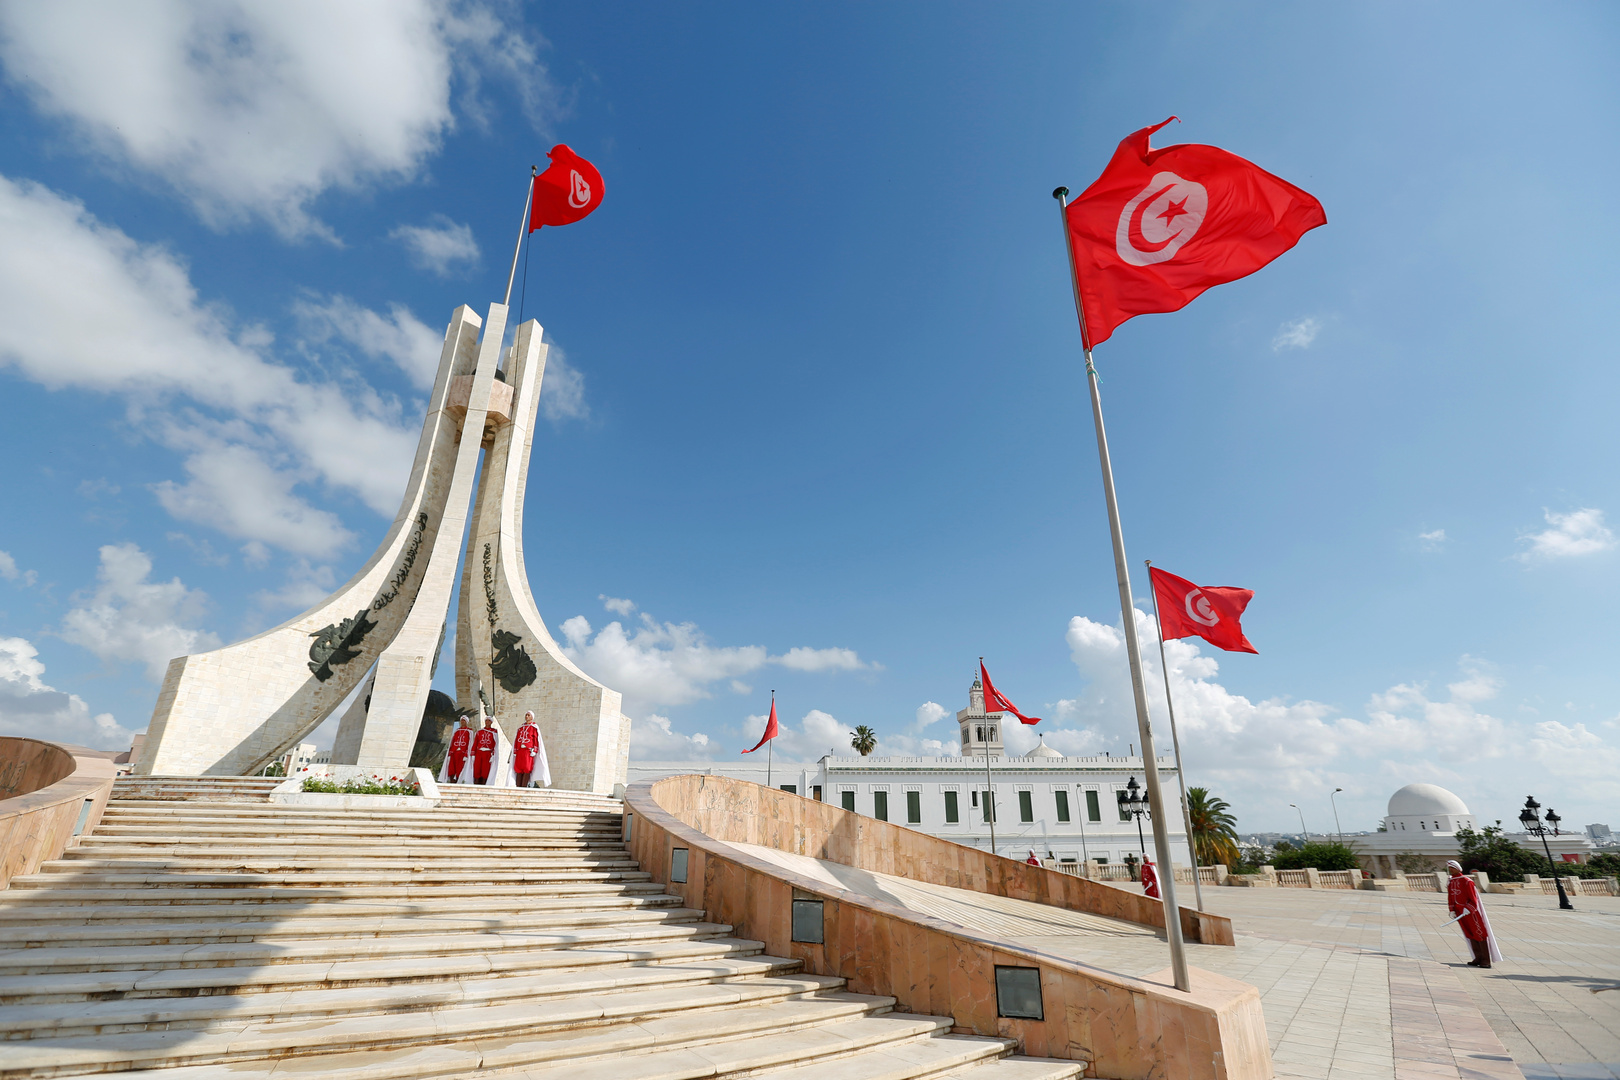 احتجاز حوالي 50 تونسيا في مراكز ليبية